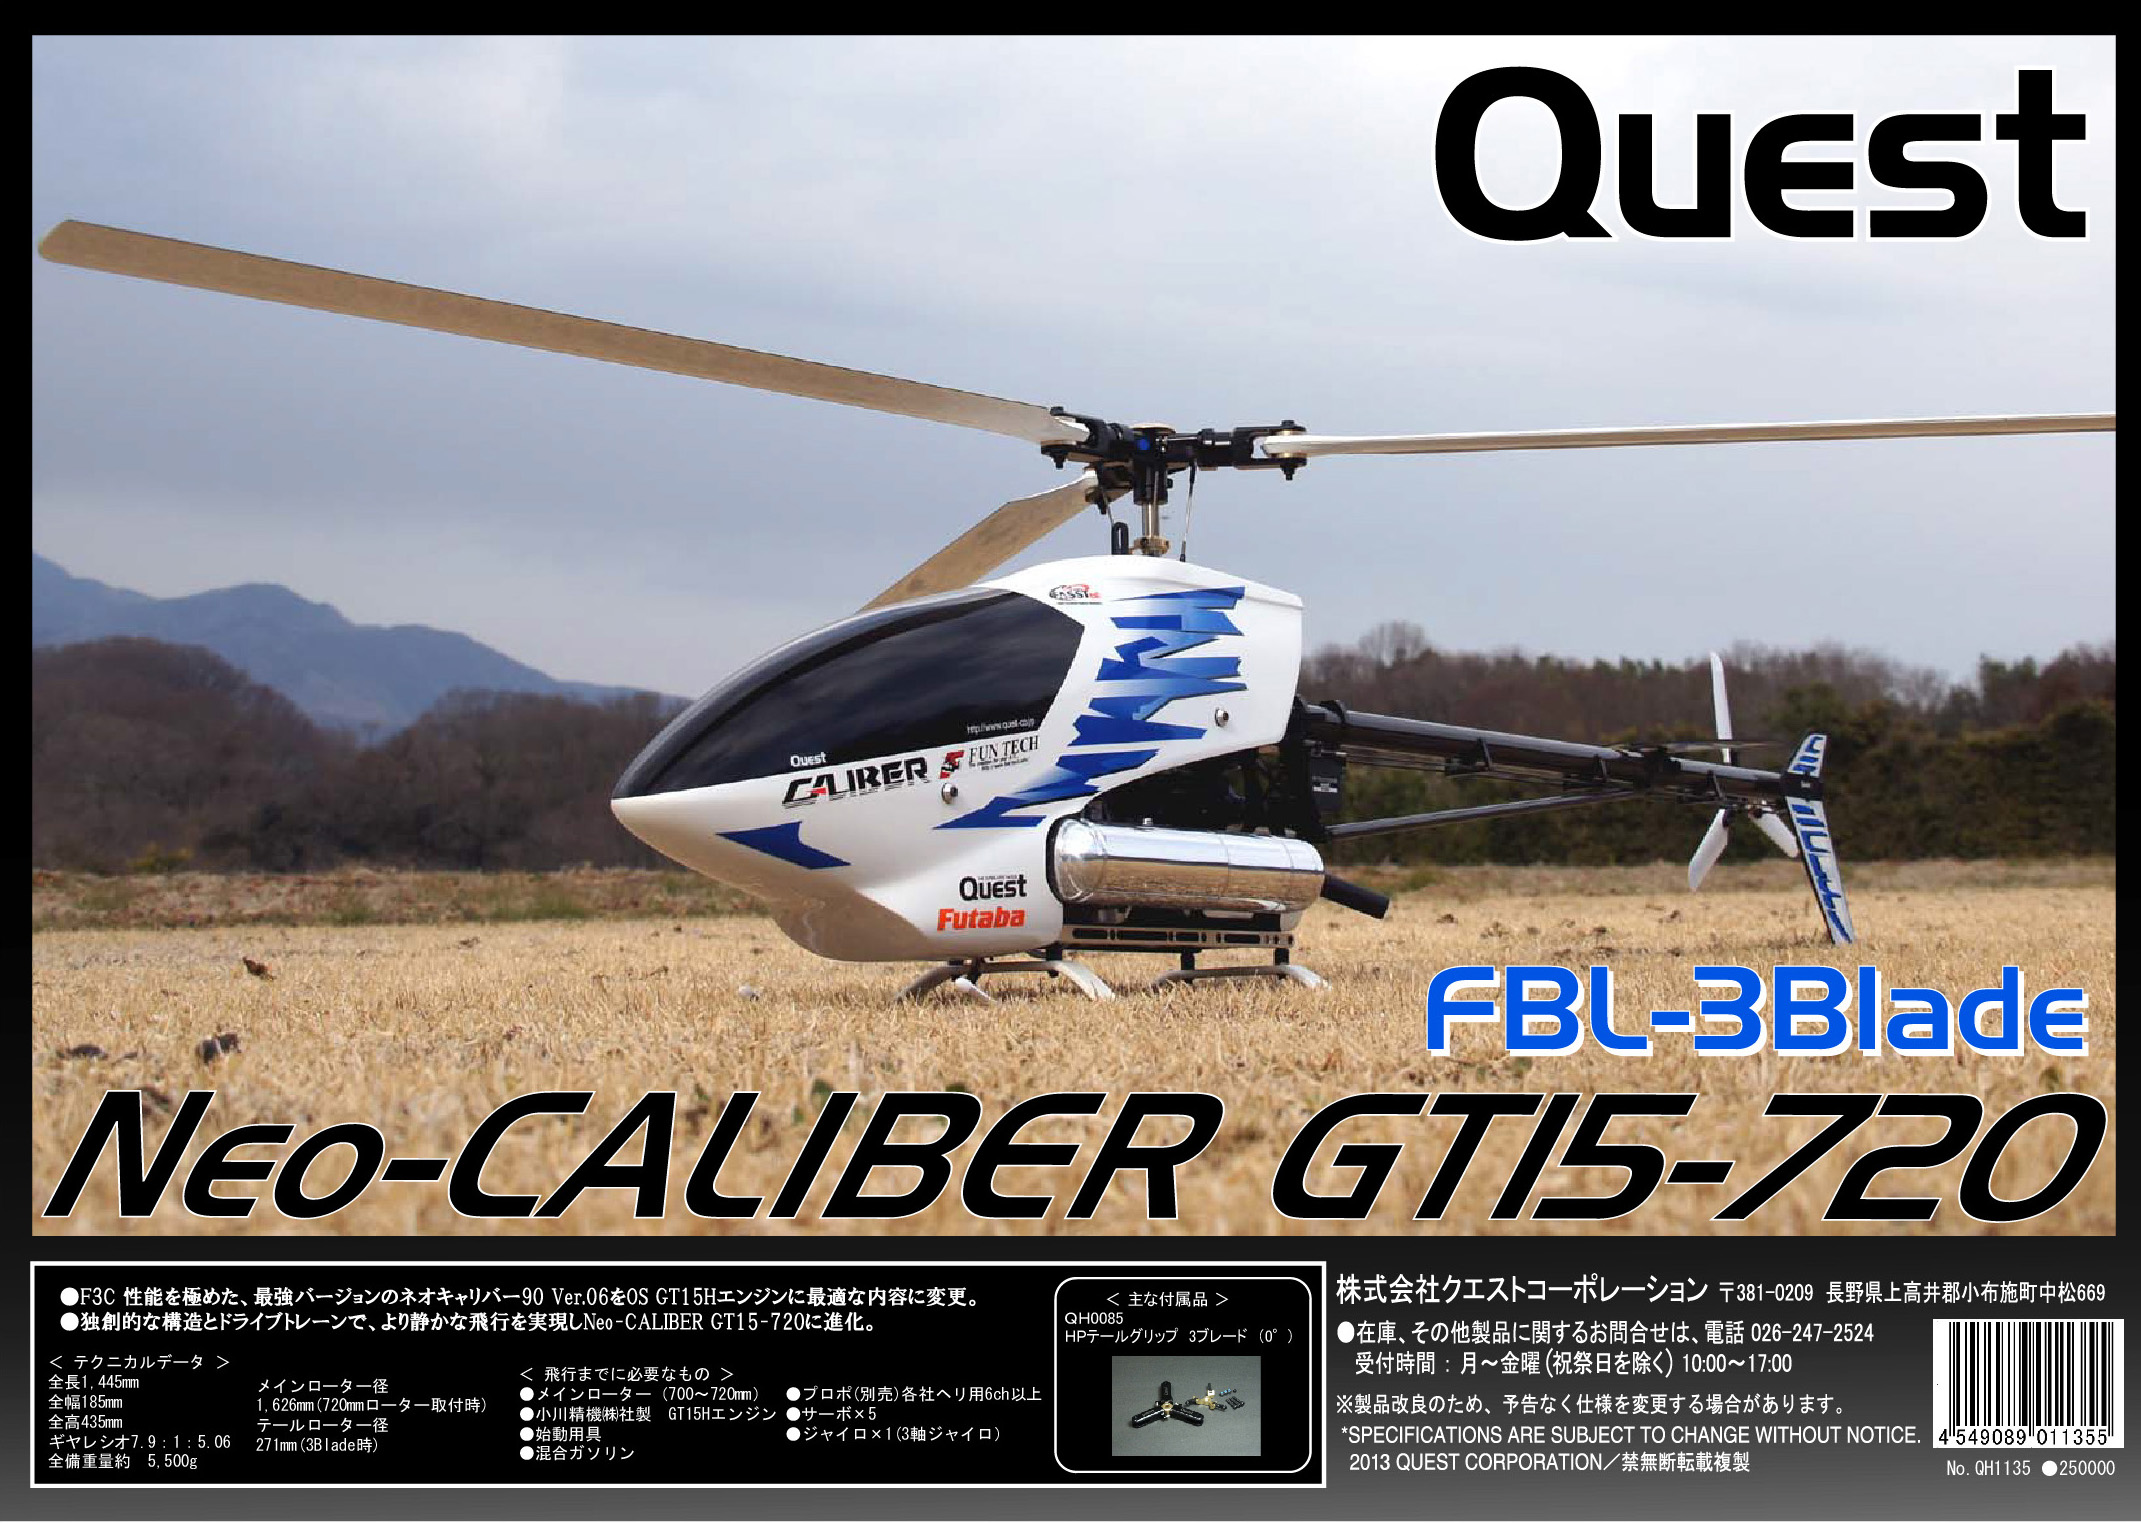 Neo-Caliber GT-15-720 FBL 3blade